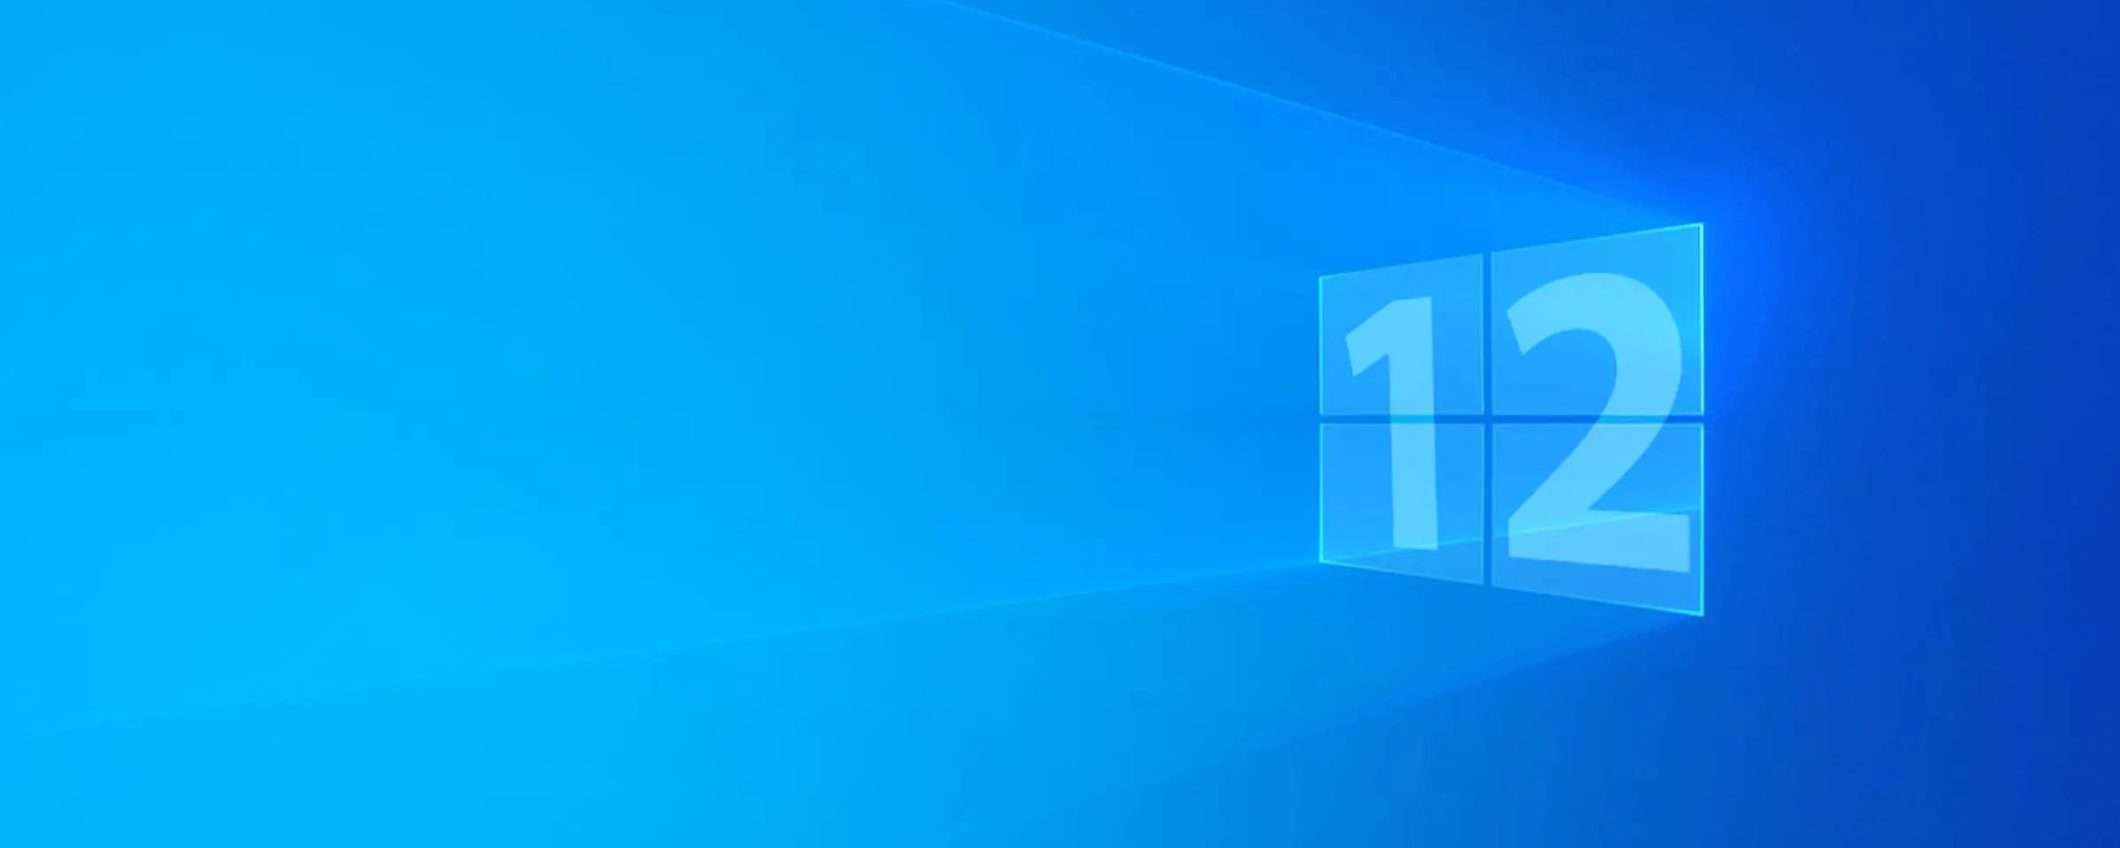 Windows 12, la prima immagine del possibile design